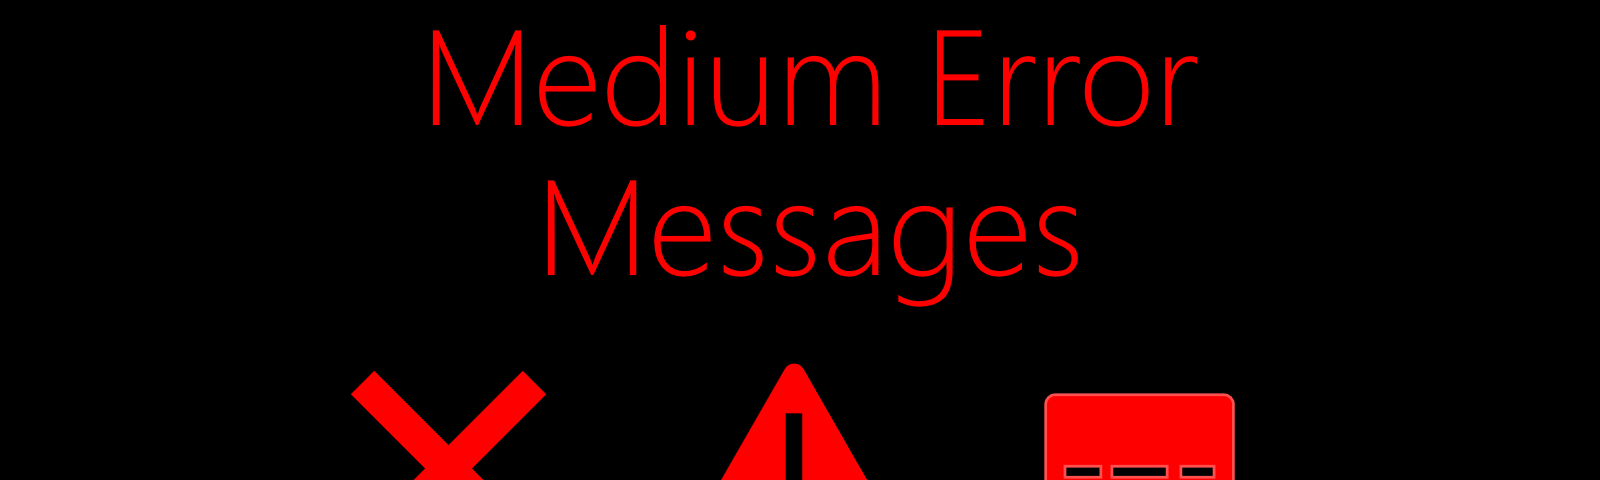 medium error message, error messages examples, medium writing platform error, medium publication error, medium image error